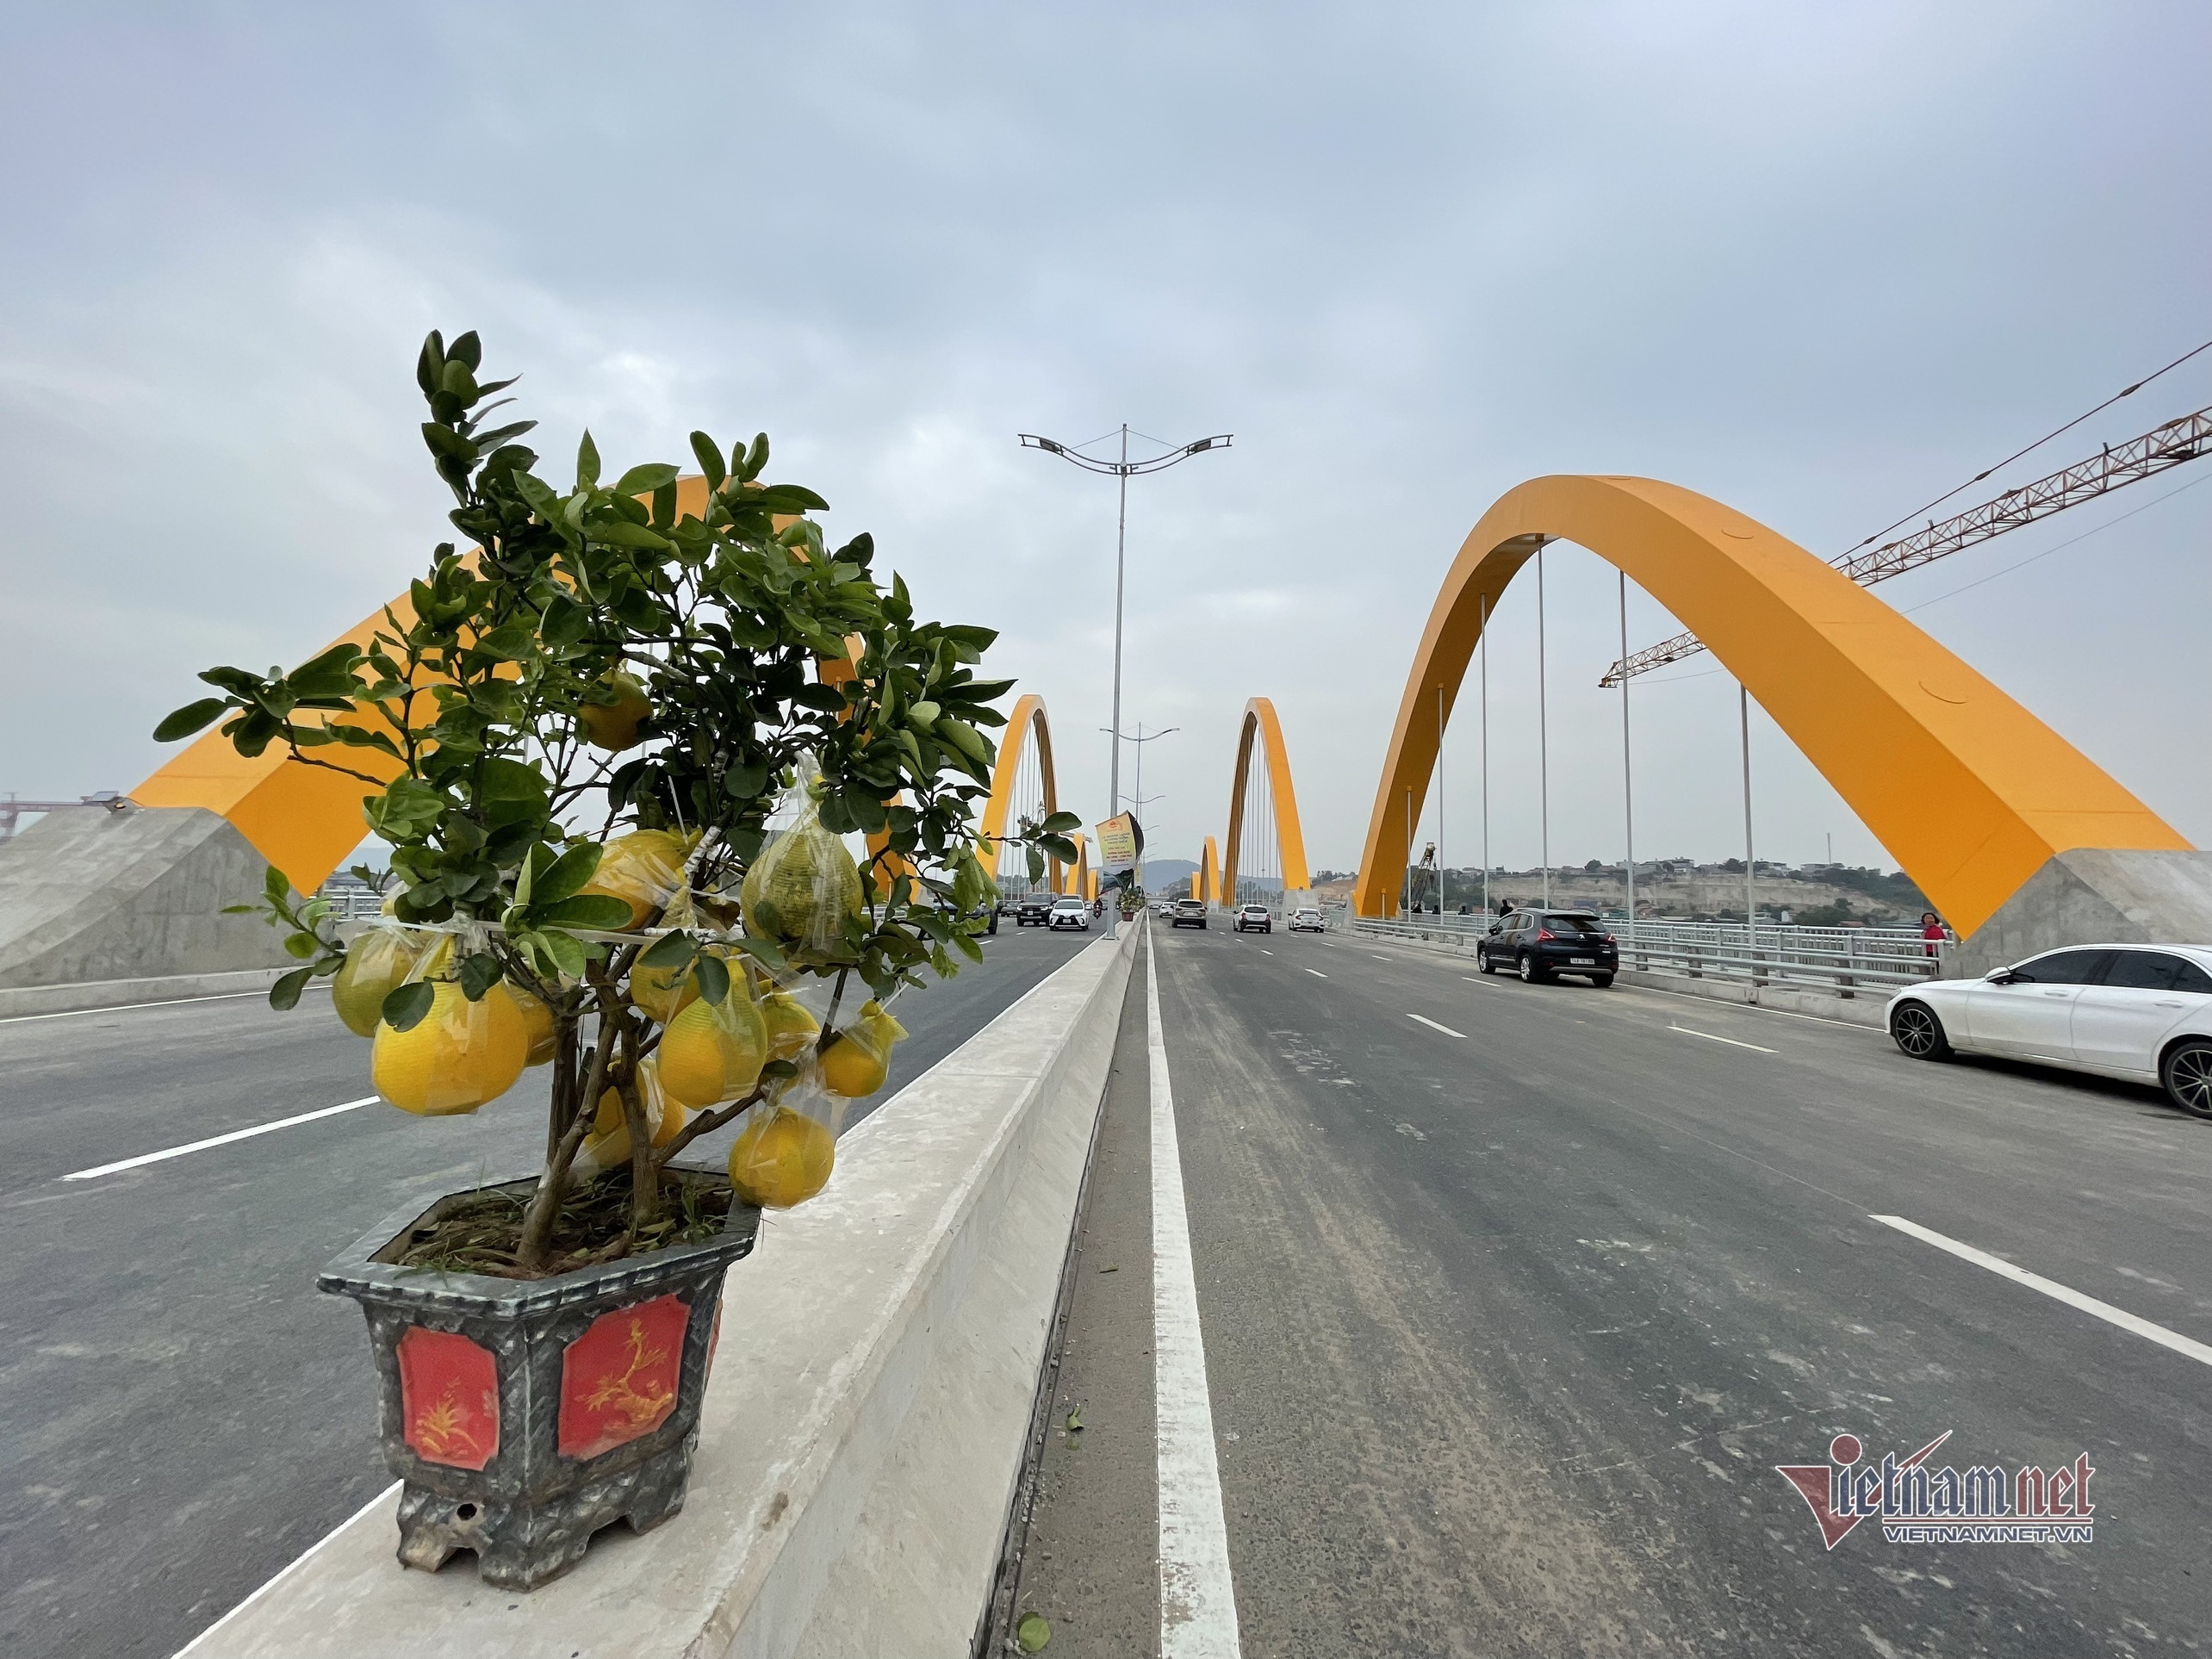 Cầu Tình Yêu hơn 2.100 tỷ ở Quảng Ninh nhộn nhịp trước ngày khánh thành